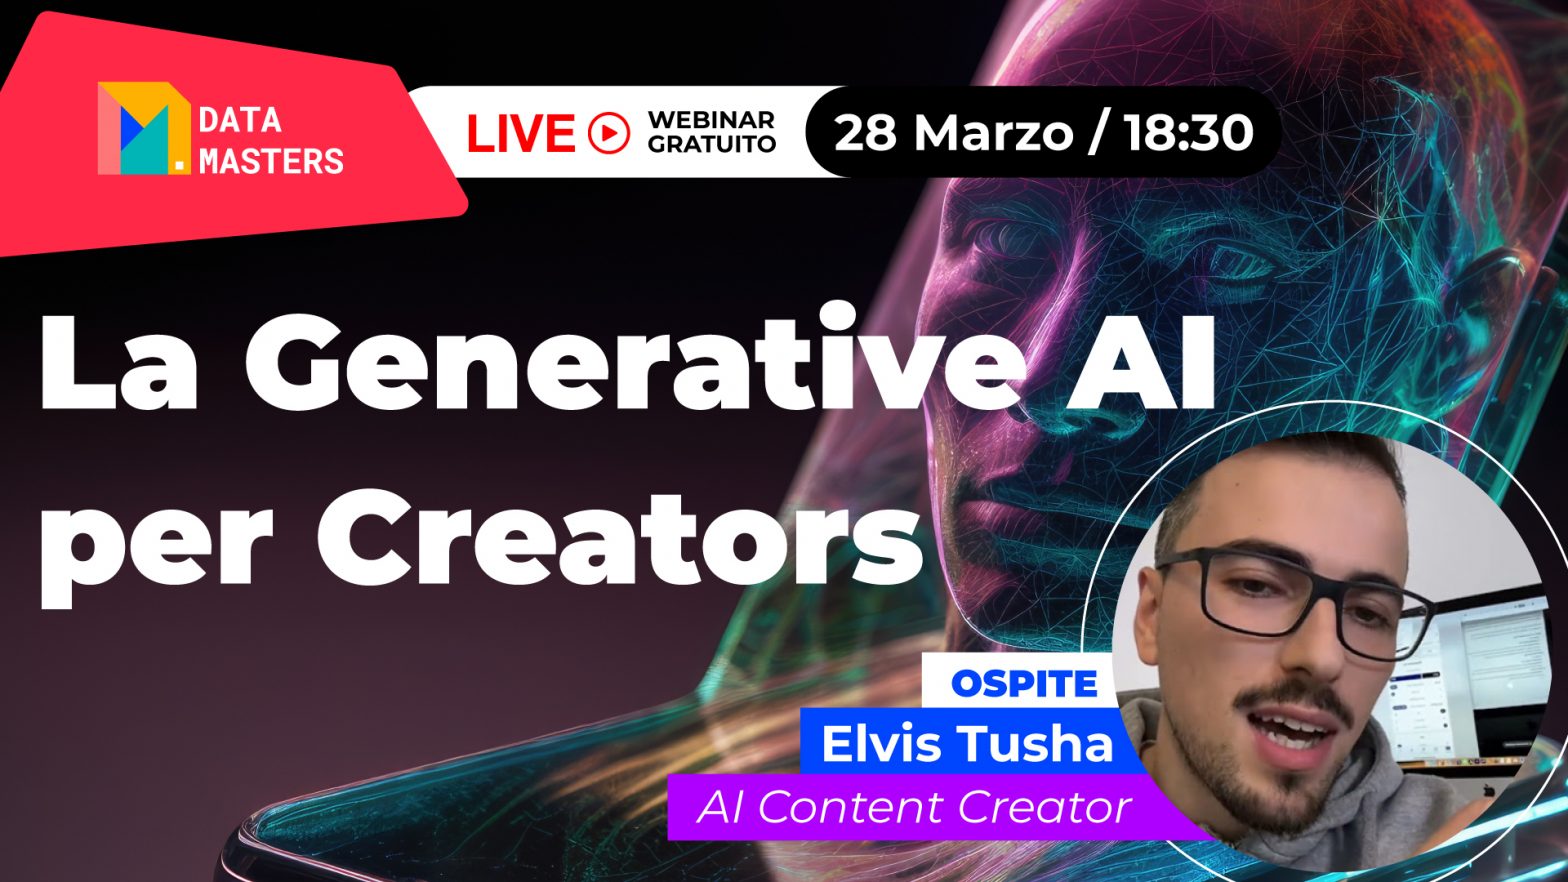 Live Gratuita sulla Generative AI per Creator con ospite Elvis Tusha, esperto nella creazione di contenuti AI.